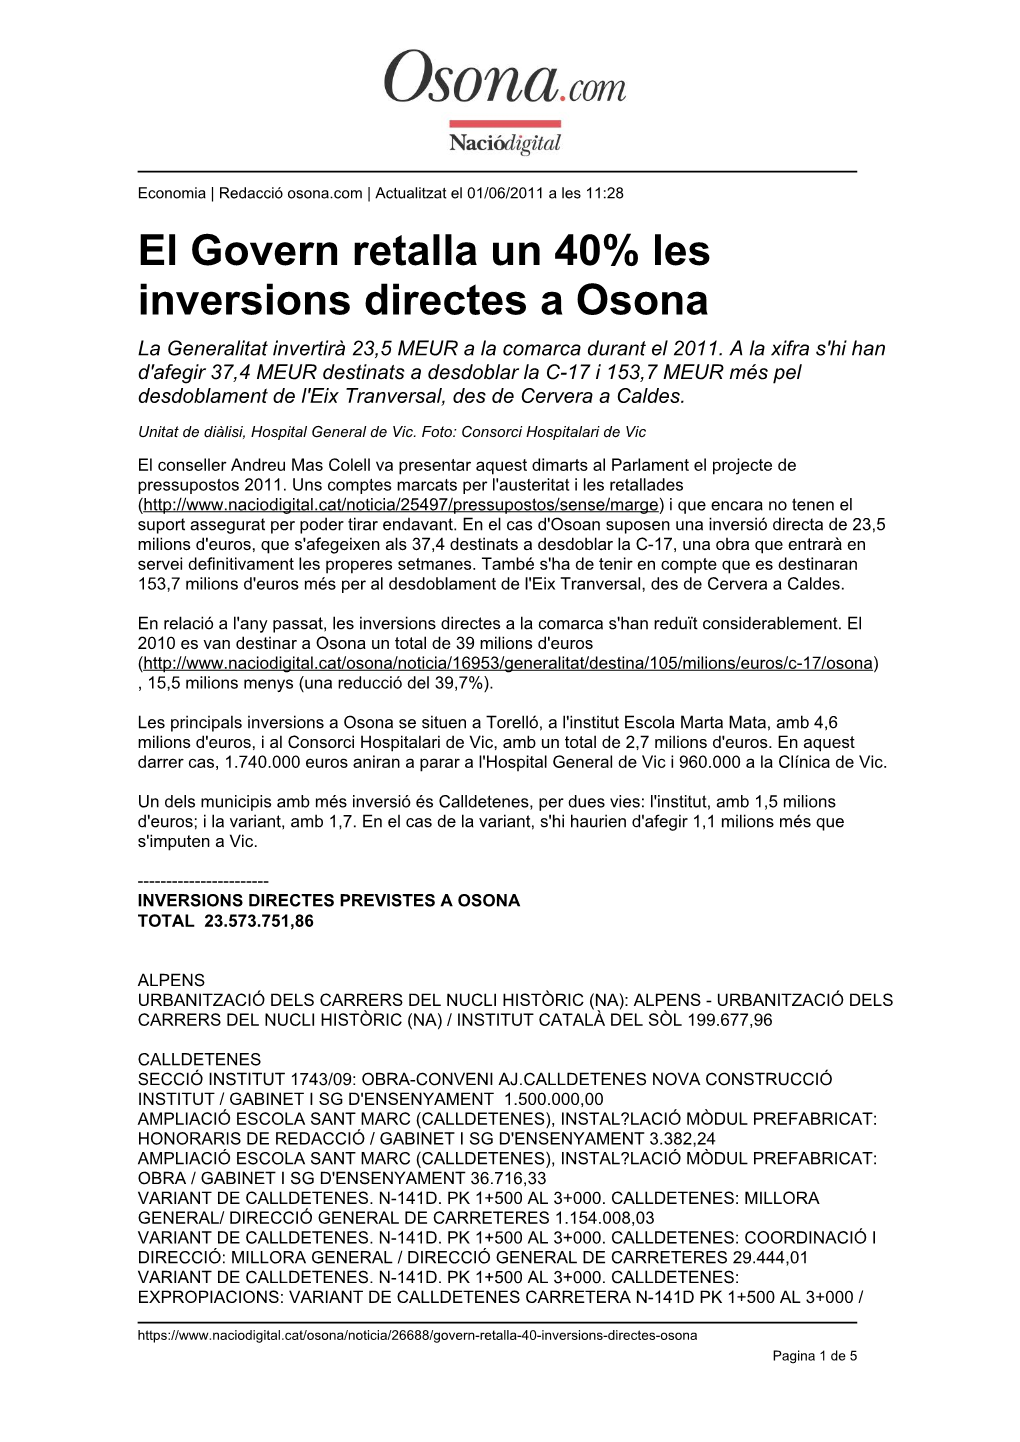 El Govern Retalla Un 40% Les Inversions Directes a Osona La Generalitat Invertirà 23,5 MEUR a La Comarca Durant El 2011